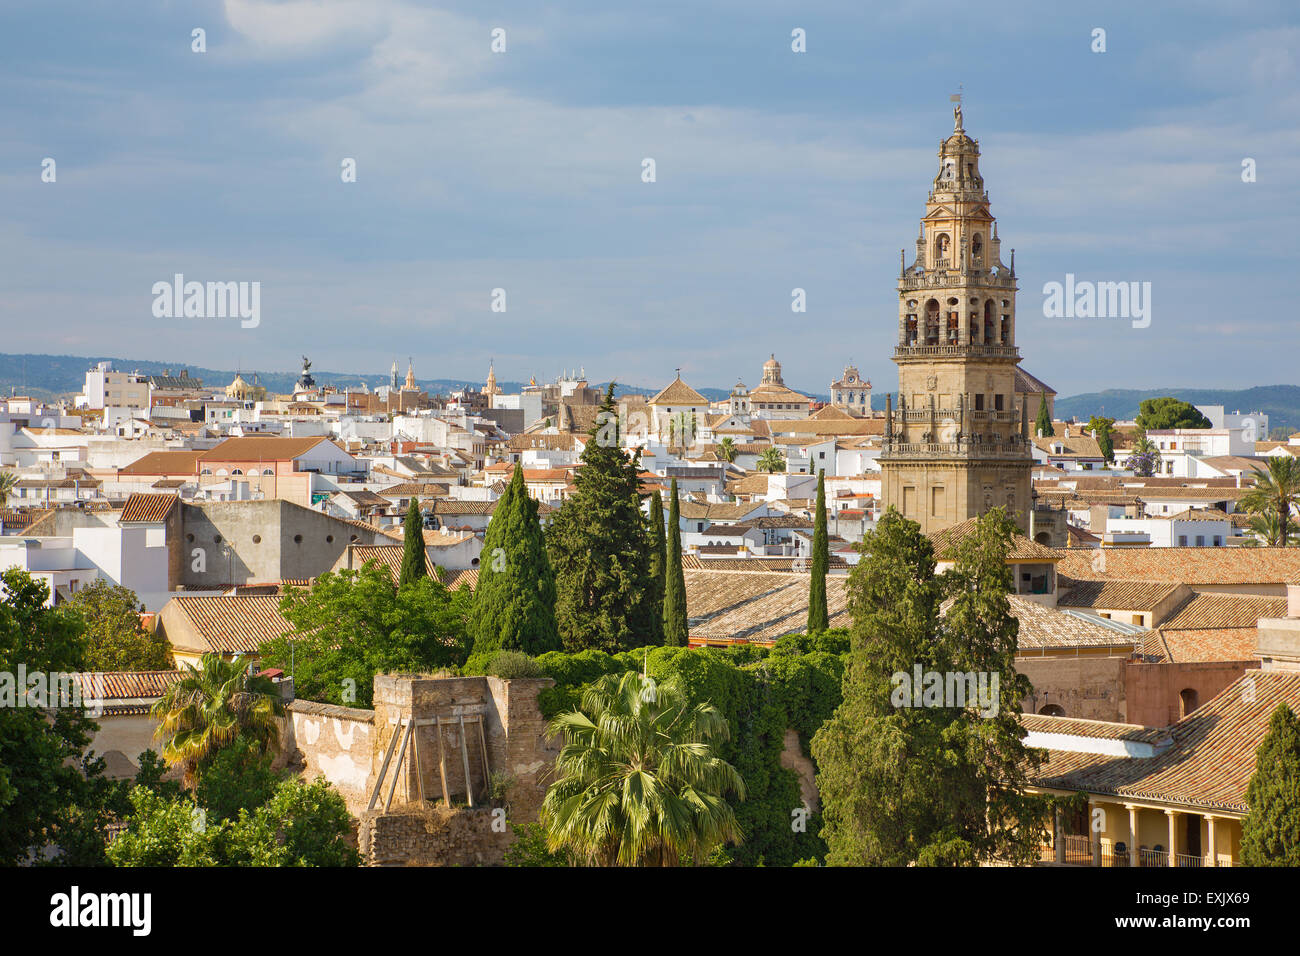 Cordoba - l'outlook dal castello Alcazar de los Reyes Cristianos per la torre della cattedrale. Foto Stock